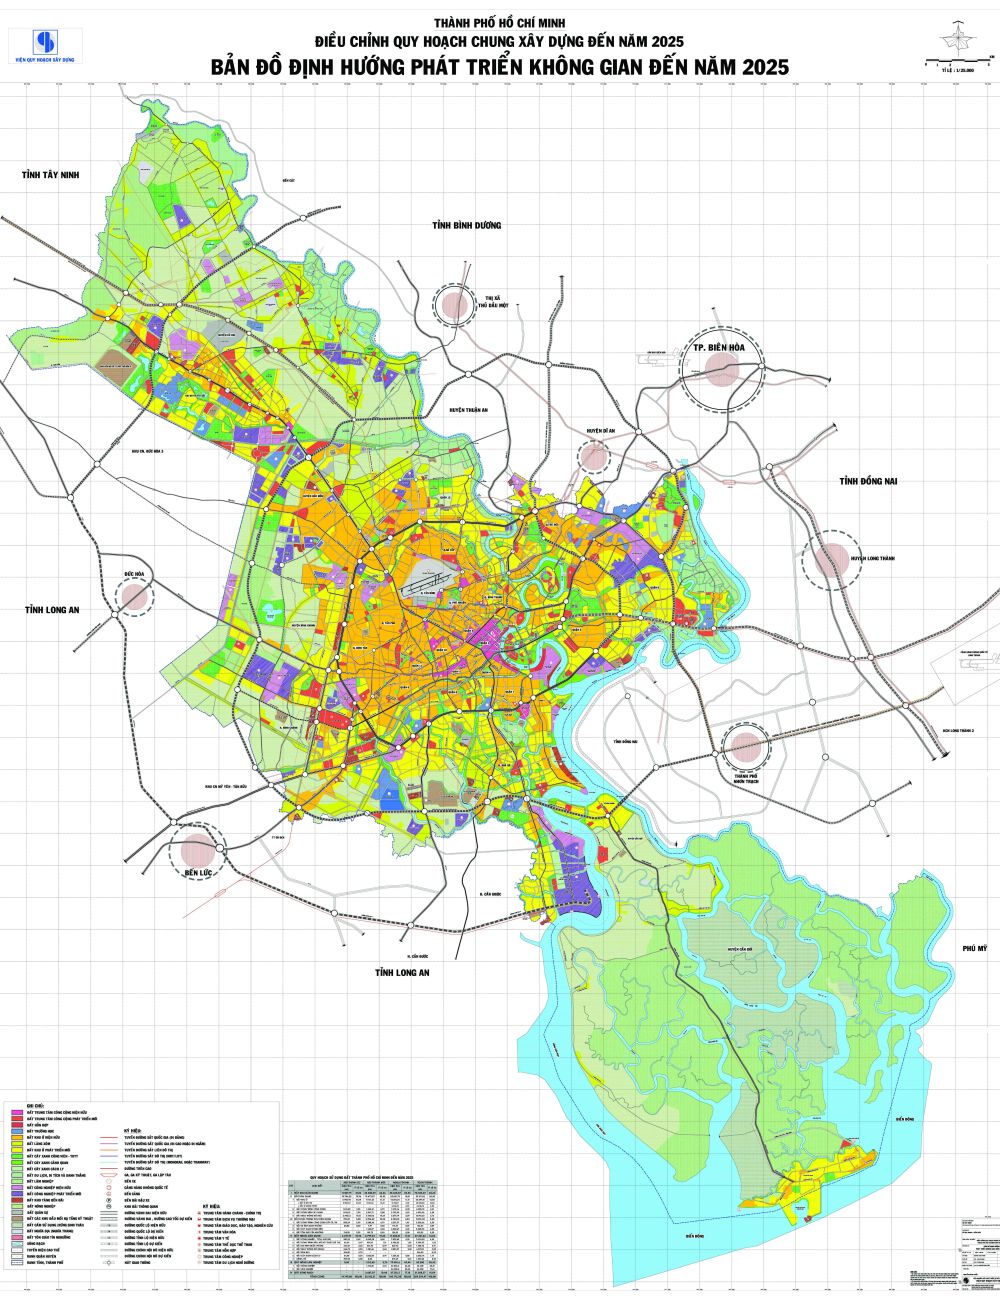 Bản đồ khổ lớn: Bản đồ khổ lớn giúp người dùng dễ dàng truy cập và tìm kiếm những địa điểm quan trọng và địa danh thú vị trên mọi miền đất nước. Đây cũng là công cụ hữu ích cho các nhà nghiên cứu và những người đam mê khám phá quần thể thiên nhiên Việt Nam.